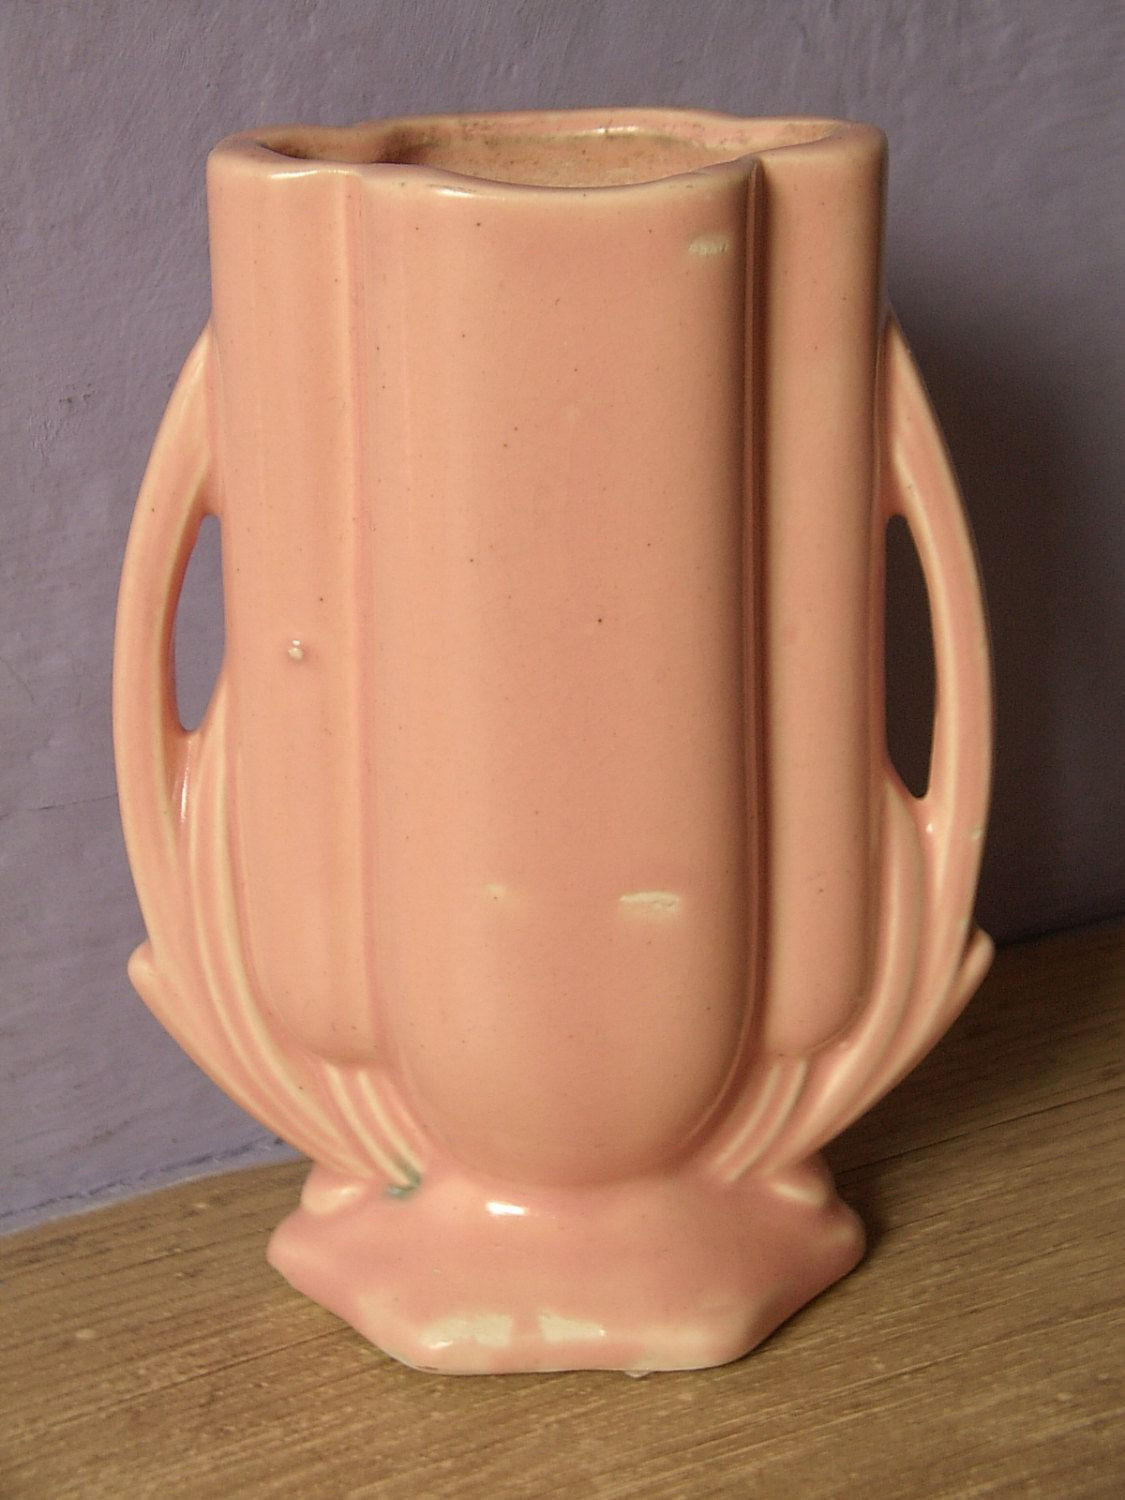 matte white ceramic vase of antique 1940s mccoy pottery vase art deco vase double handle vase inside antique 1940s mccoy pottery vase art deco vase double handle vase peach pink pottery vase ceramic vase antique pottery